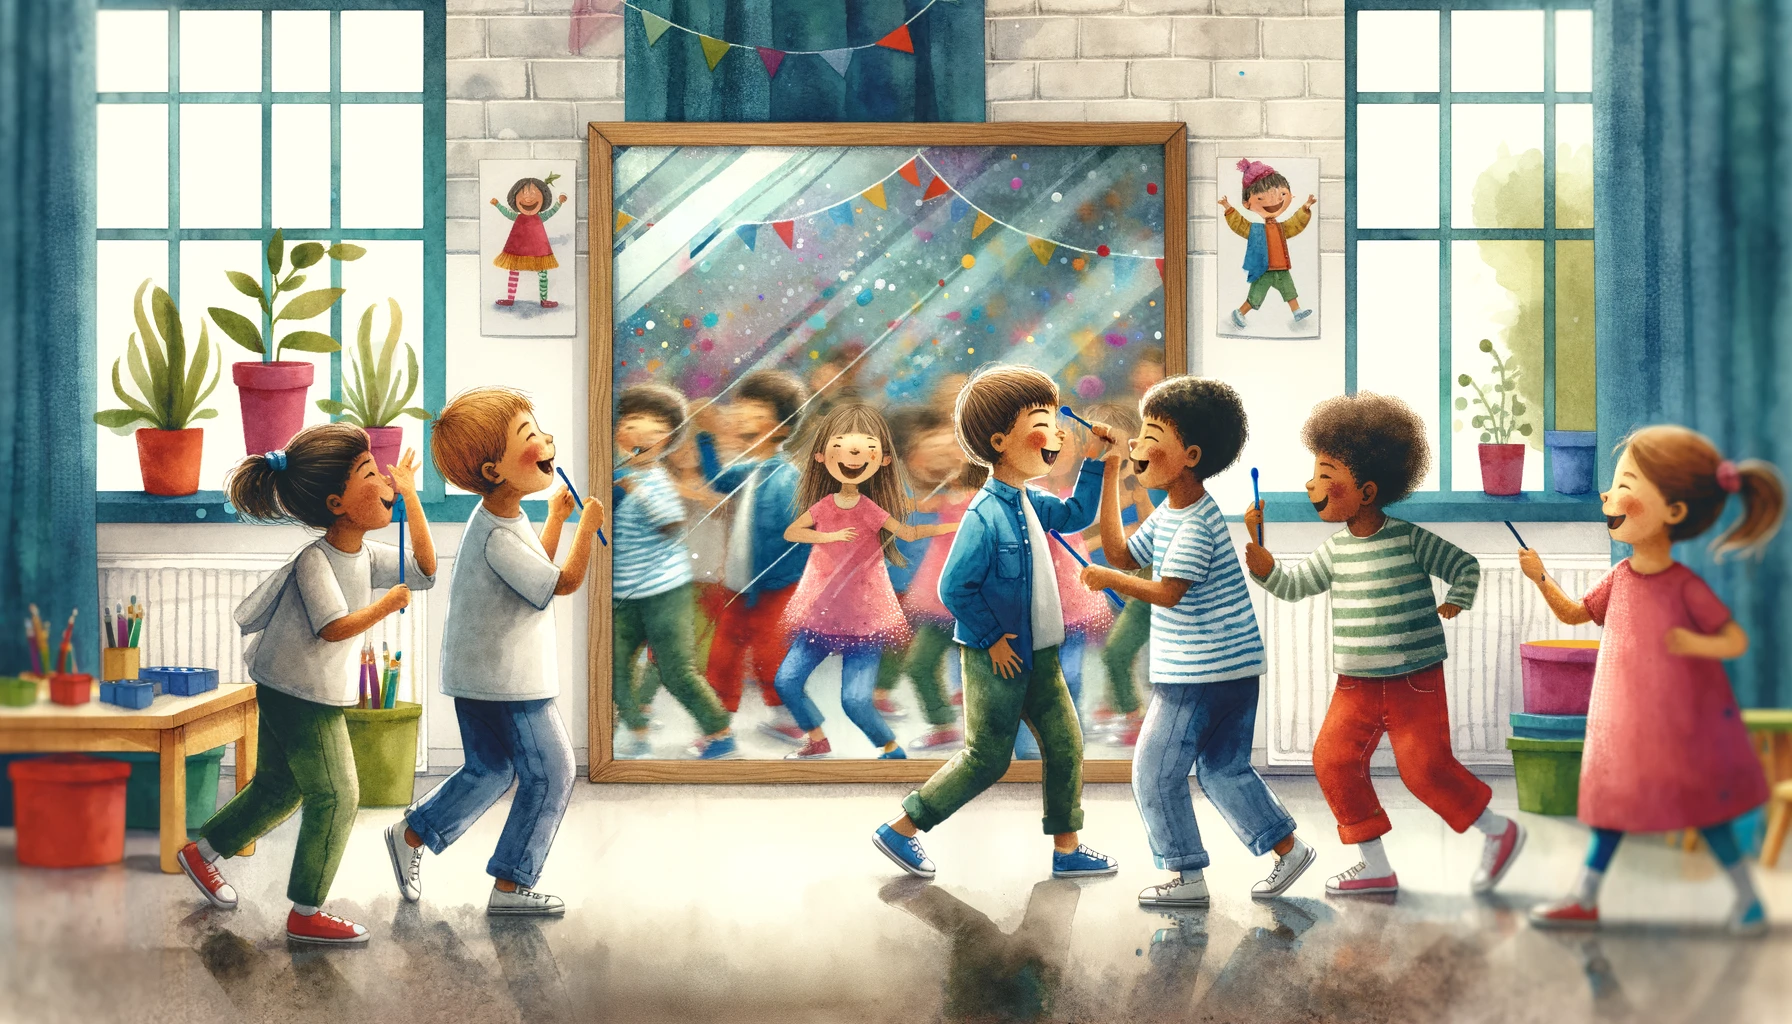 Kinder bei Spiegelspielen, Erkundung von Gesichtsausdrücken und Bewegungen, ein lebhafter Kindergartenraum mit einer Spiegelwand, erfüllt von Lachen und Interaktion, eine fröhliche und dynamische Umgebung, die soziale Fähigkeiten und Empathie fördert, Kunstwerk, Aquarellmalerei auf strukturiertem Papier, im 16:9 Format.